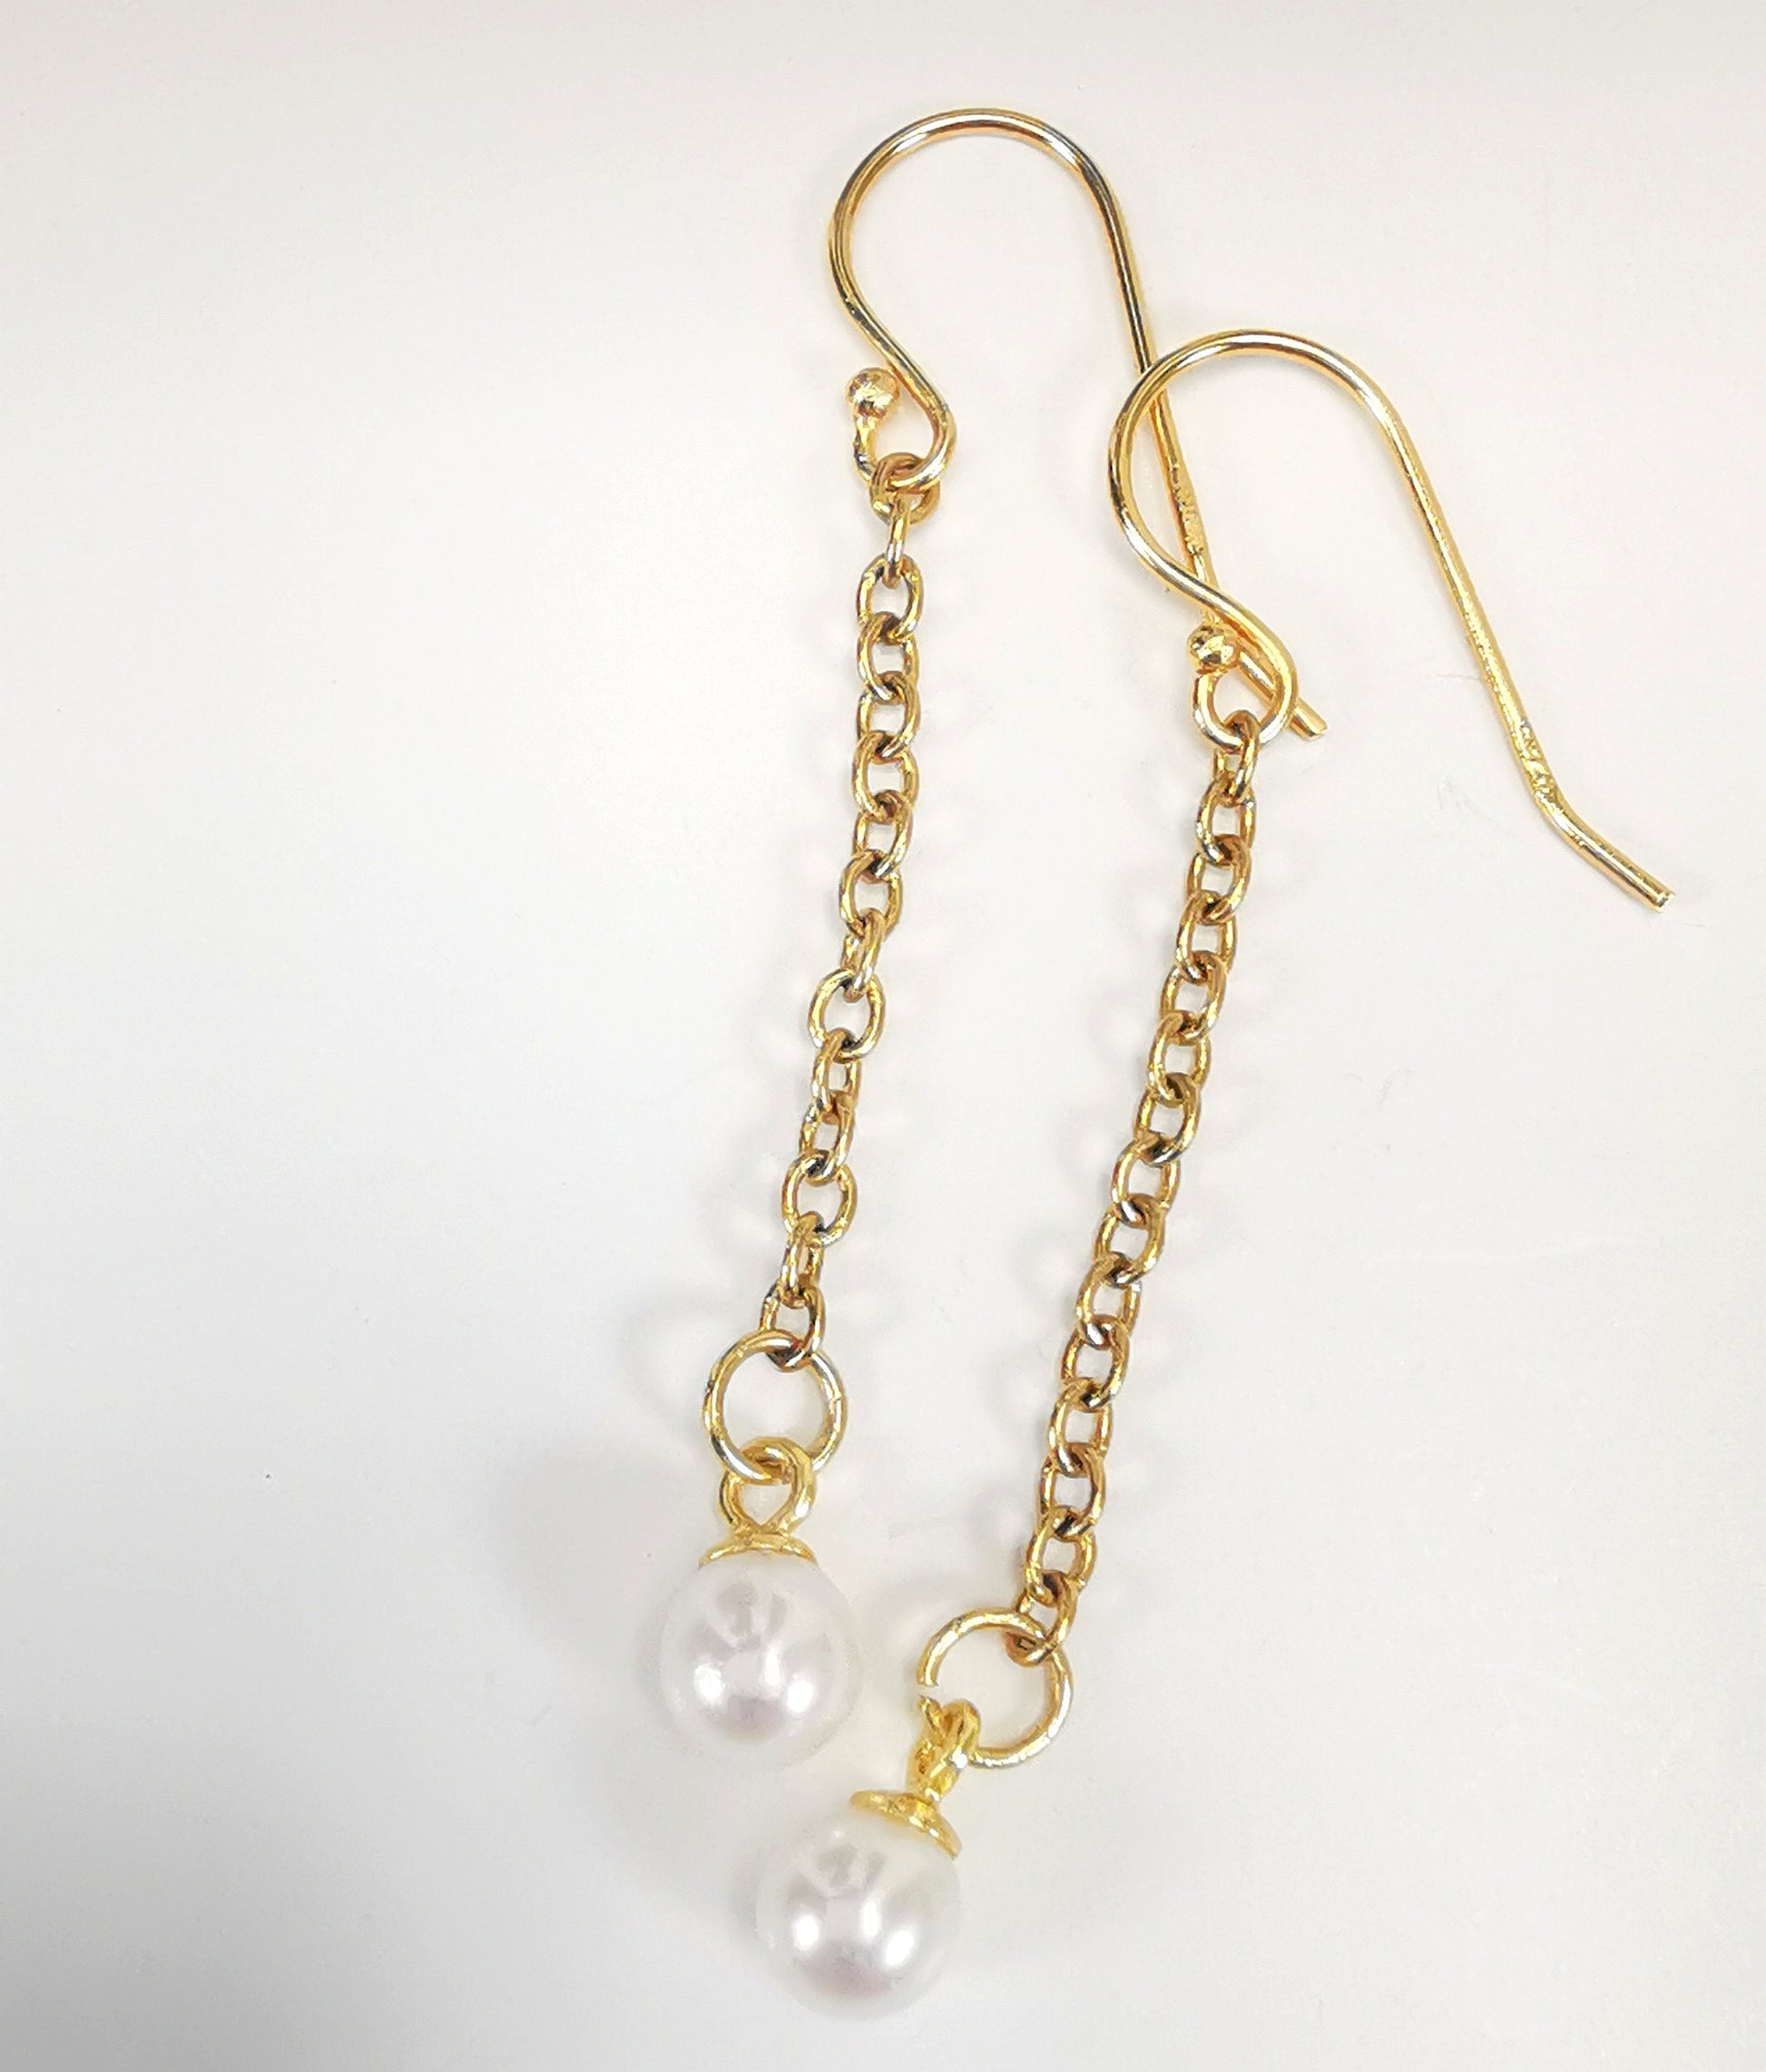 Boucles d'oreilles perles de culture blanches rondes 5mm sur pendants et chaînes plaqués or. Présentées cote à cote, boucle de gauche décalée vers le haut, sur fond blanc. Vue de dessus.